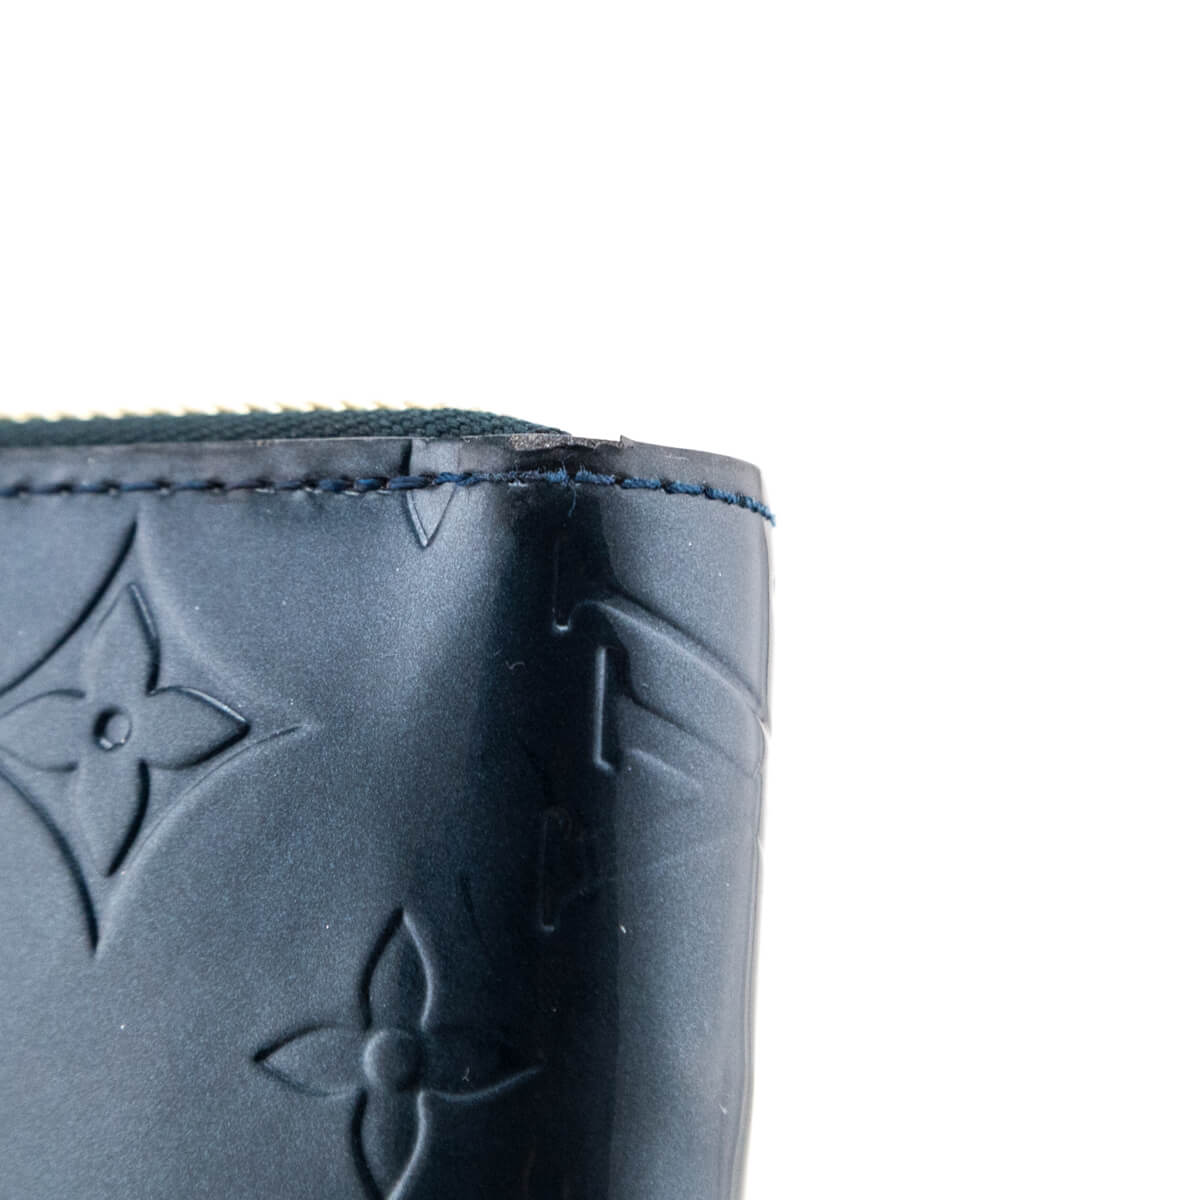 Louis Vuitton Long Wallet - Monogram Glace Leather